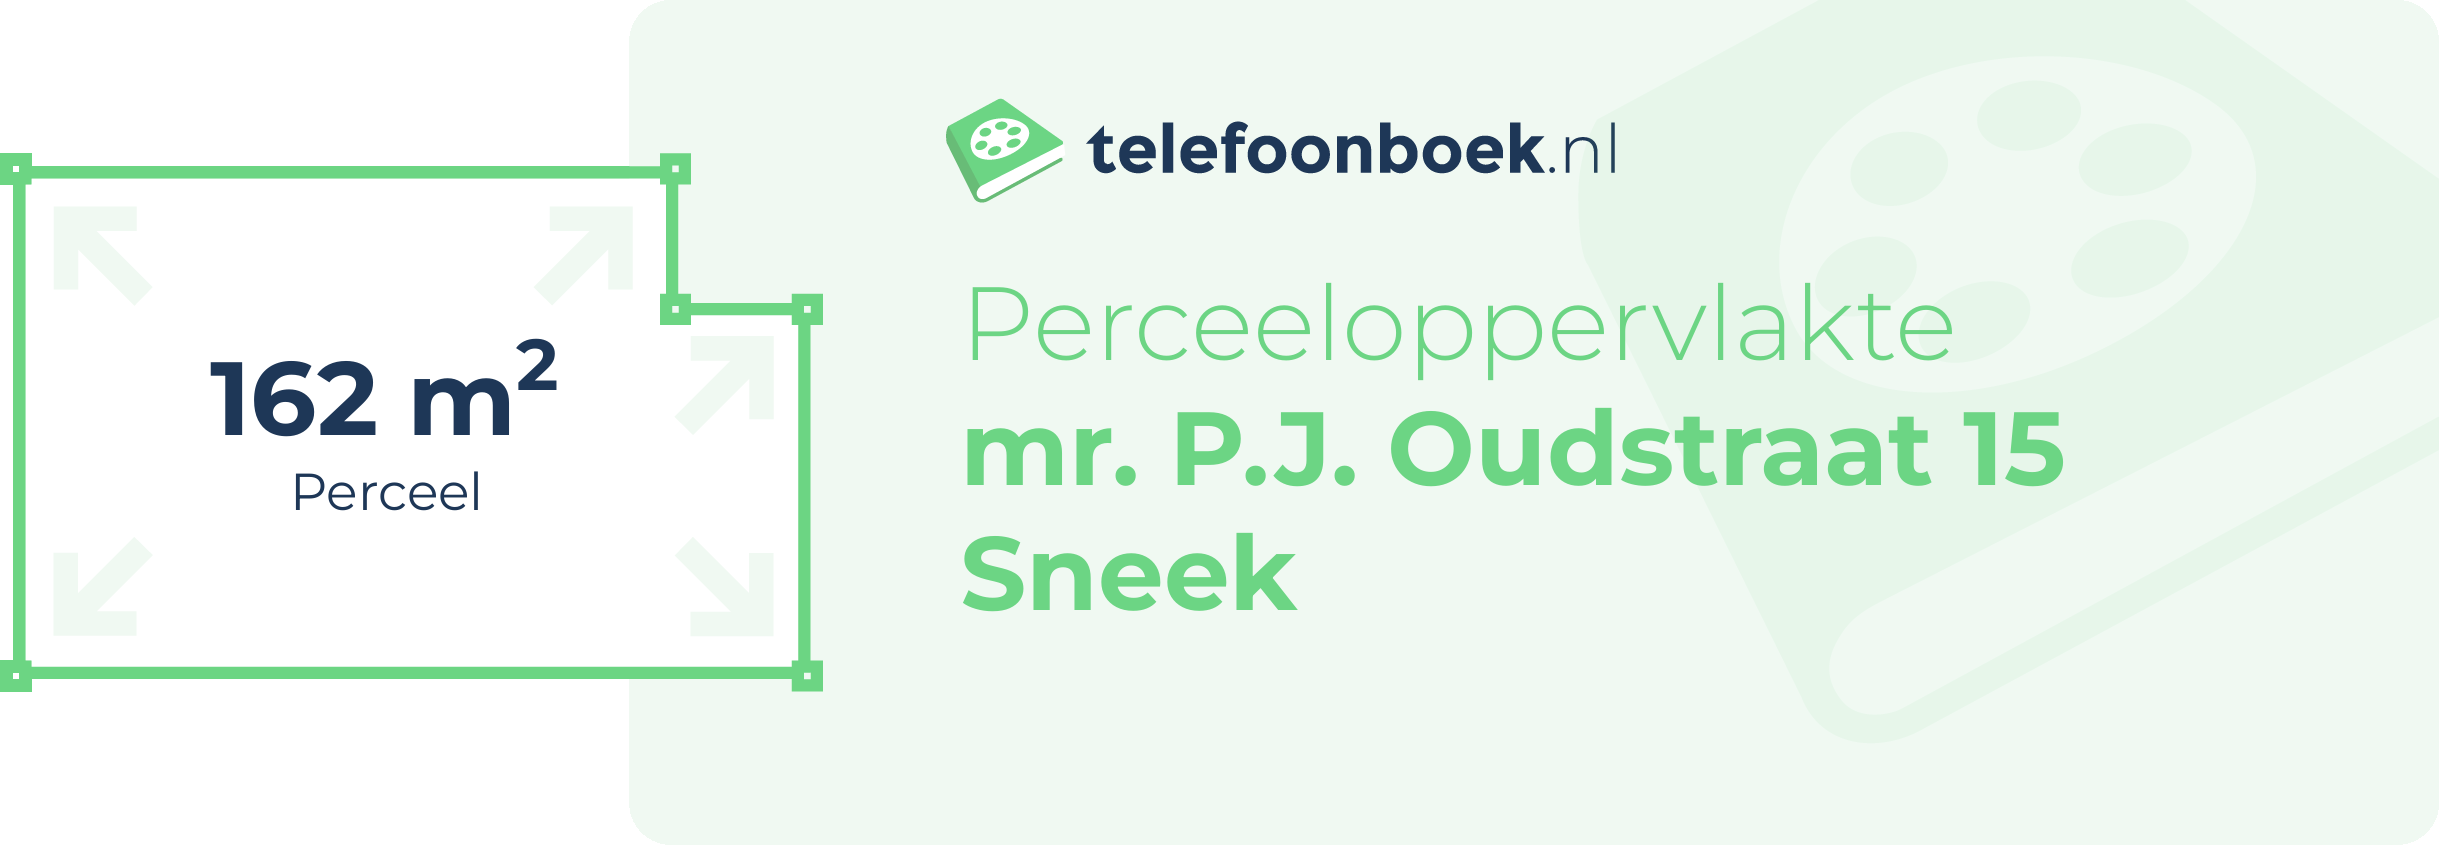 Perceeloppervlakte Mr. P.J. Oudstraat 15 Sneek